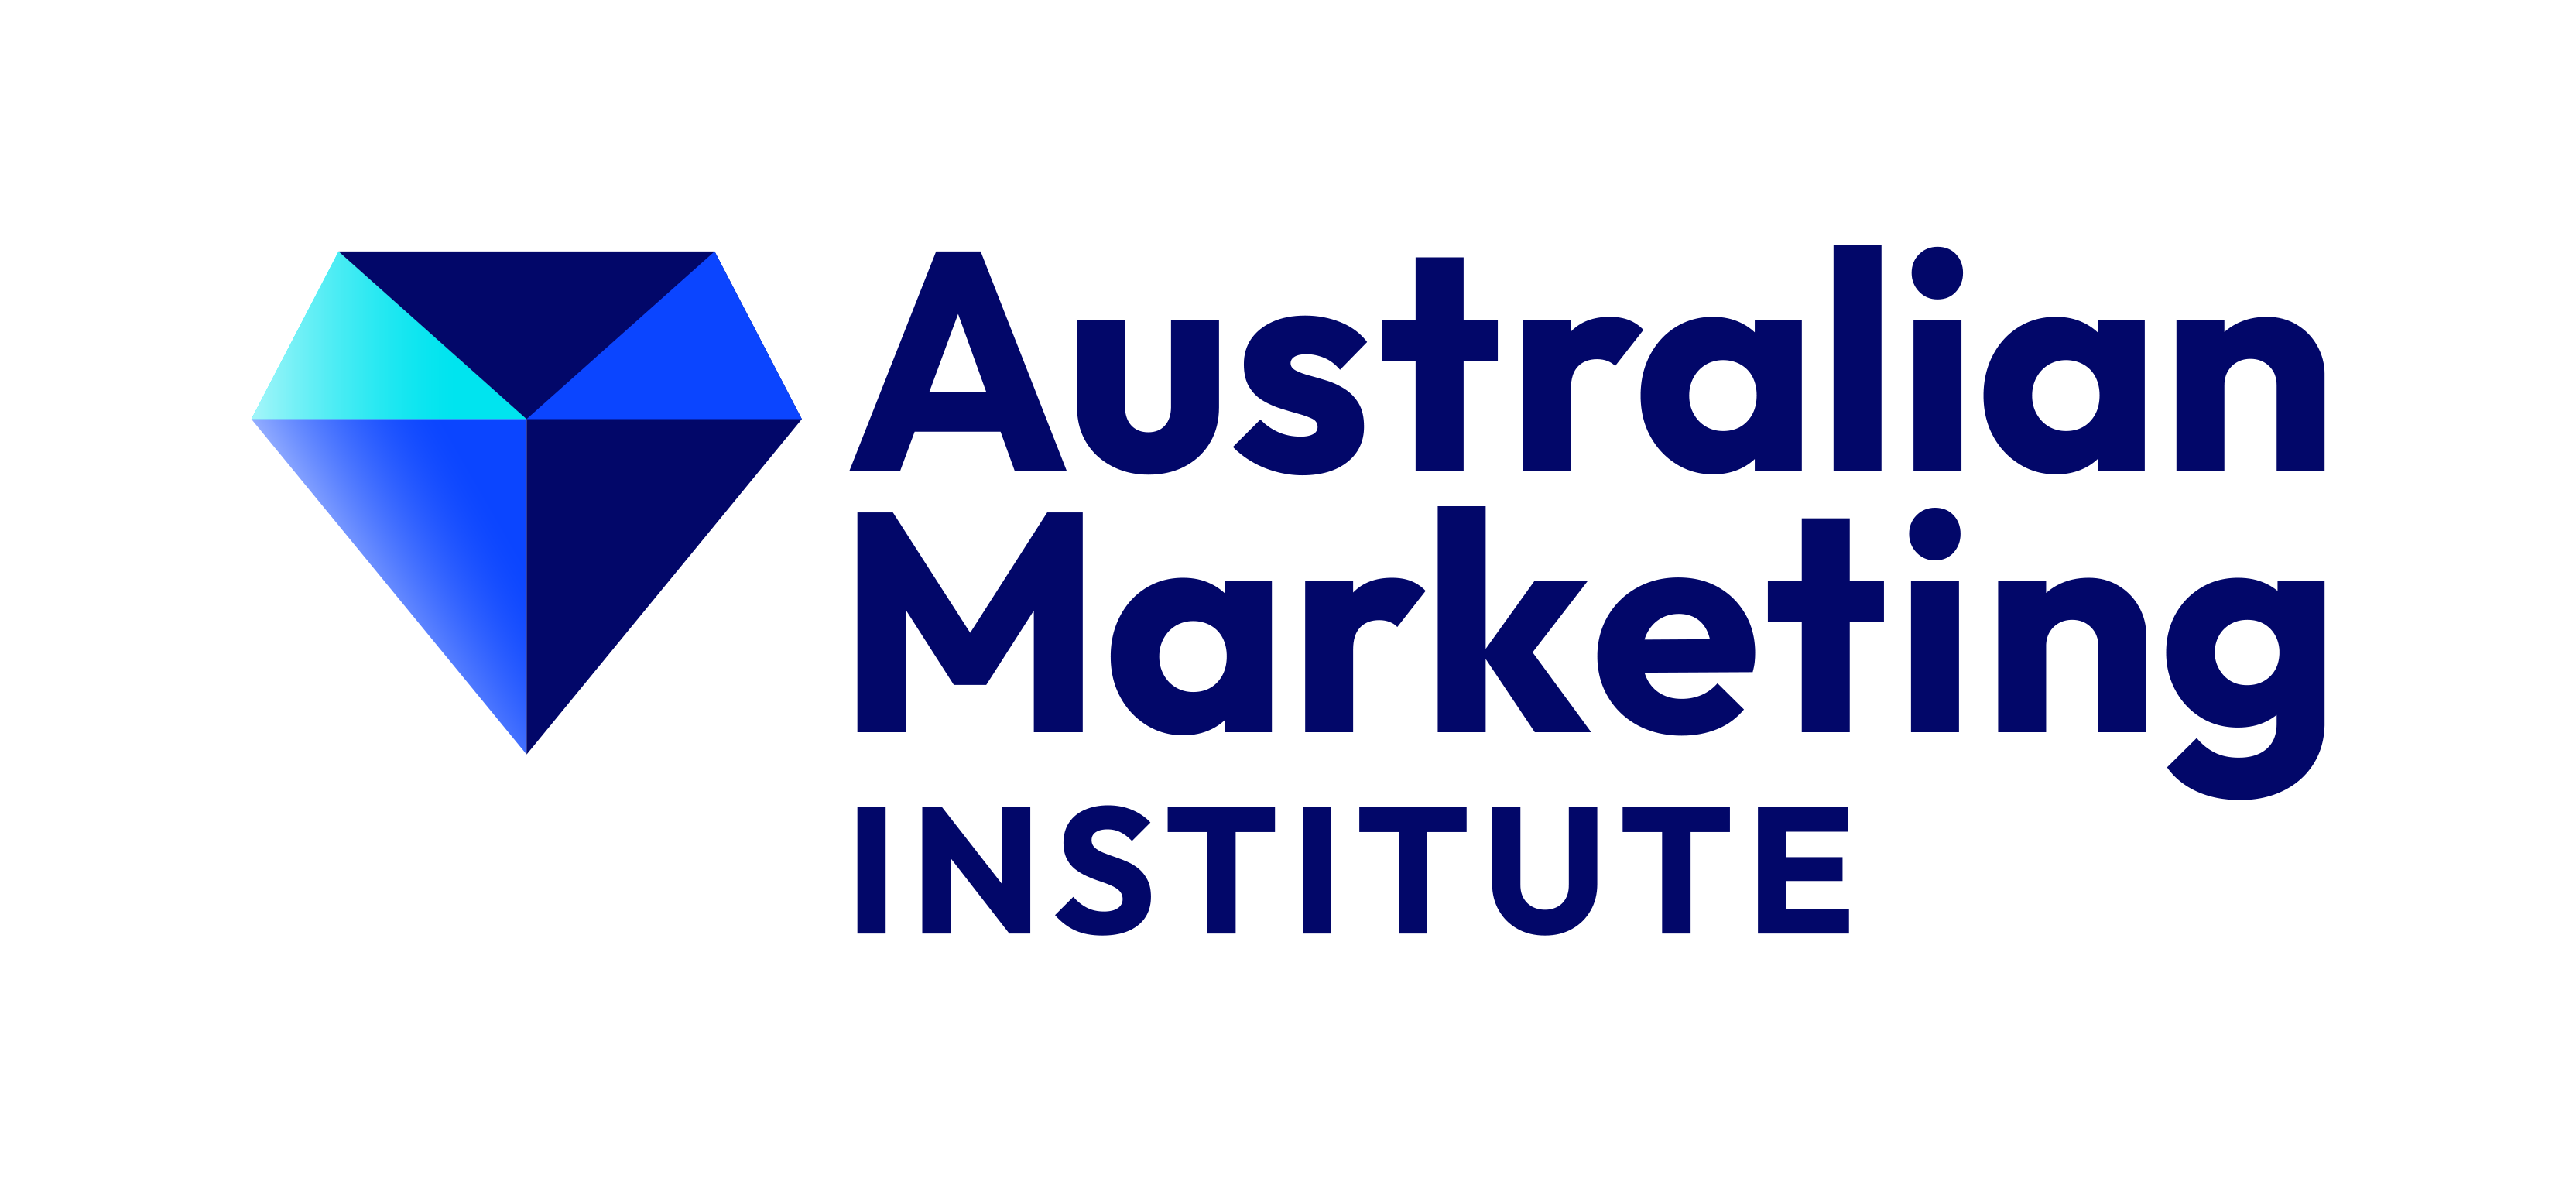 Australian Marketing Institute (AMI) logo